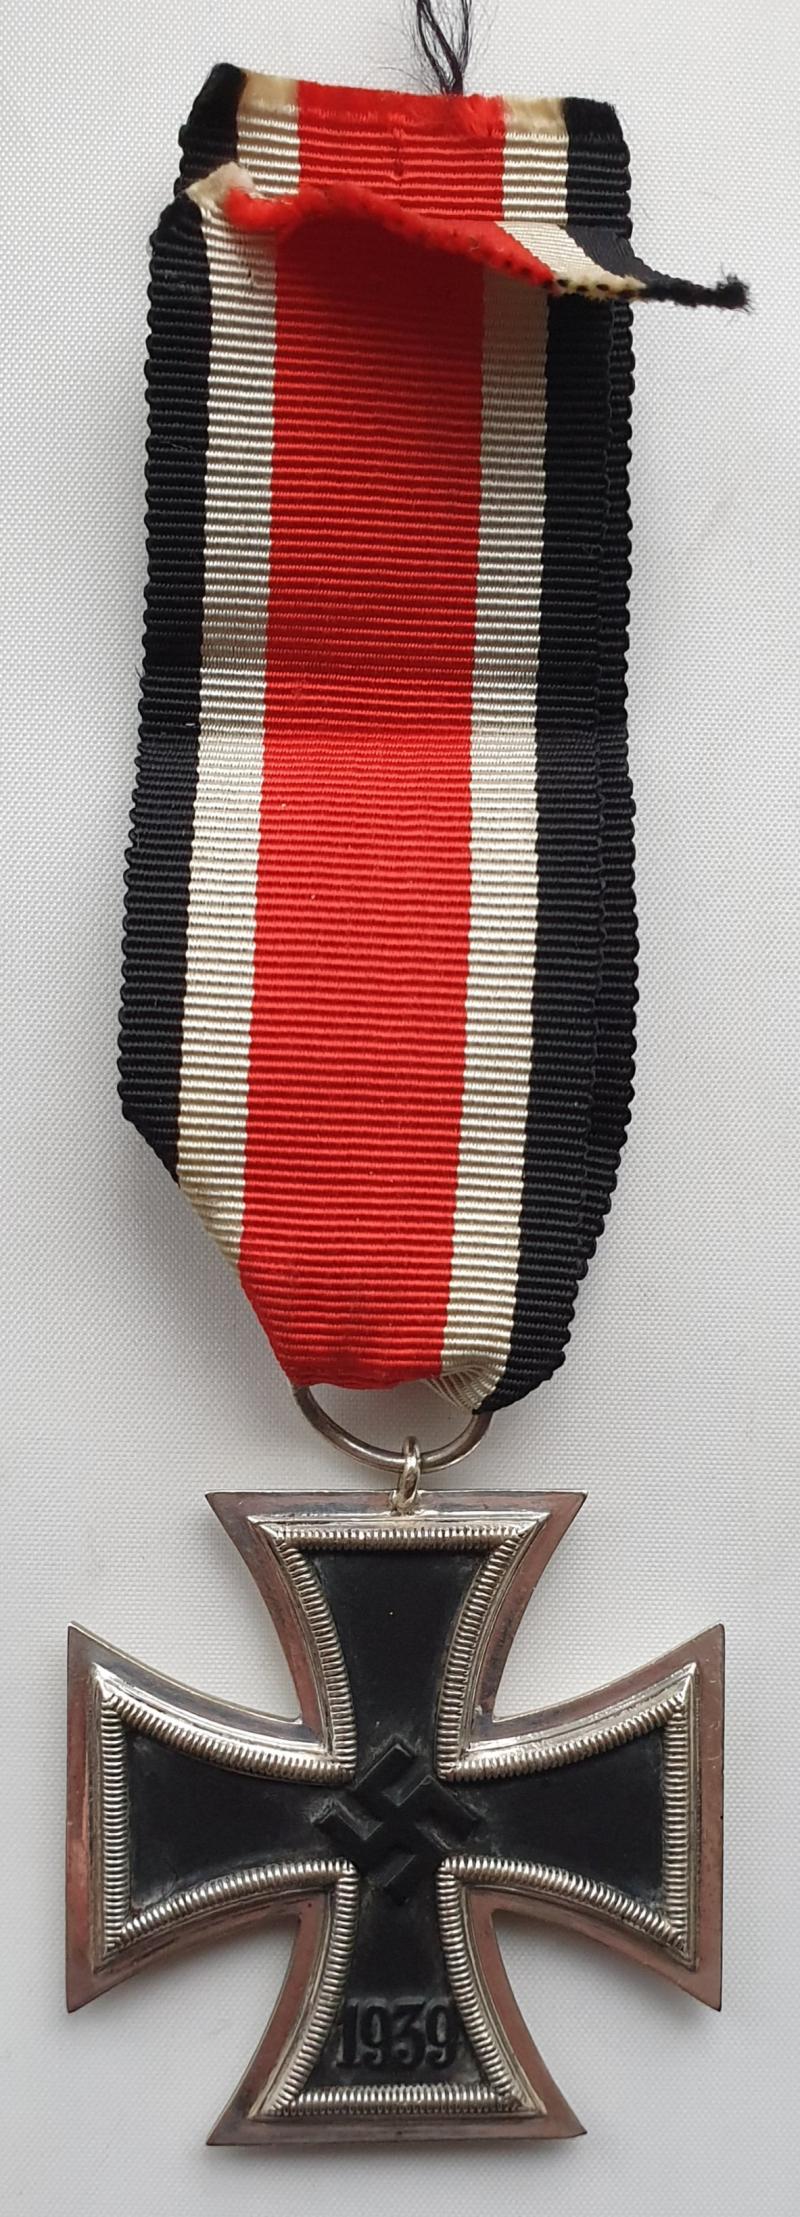 1939 Iron Cross Second Class.